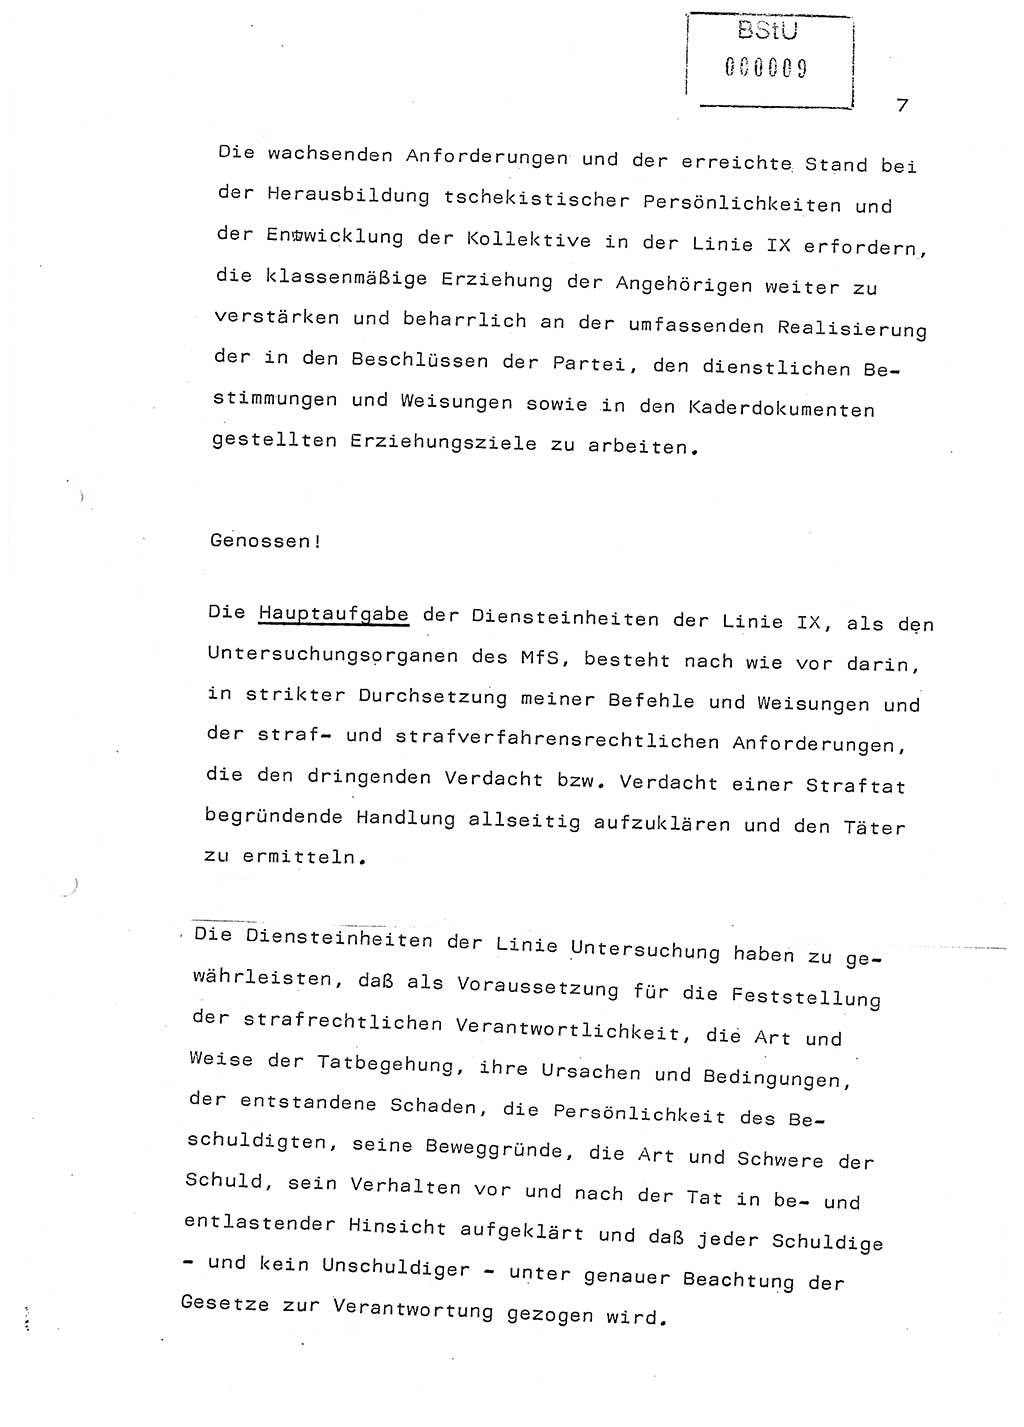 Referat (Generaloberst Erich Mielke) auf der Zentralen Dienstkonferenz am 24.5.1979 [Ministerium für Staatssicherheit (MfS), Deutsche Demokratische Republik (DDR), Der Minister], Berlin 1979, Seite 7 (Ref. DK DDR MfS Min. /79 1979, S. 7)